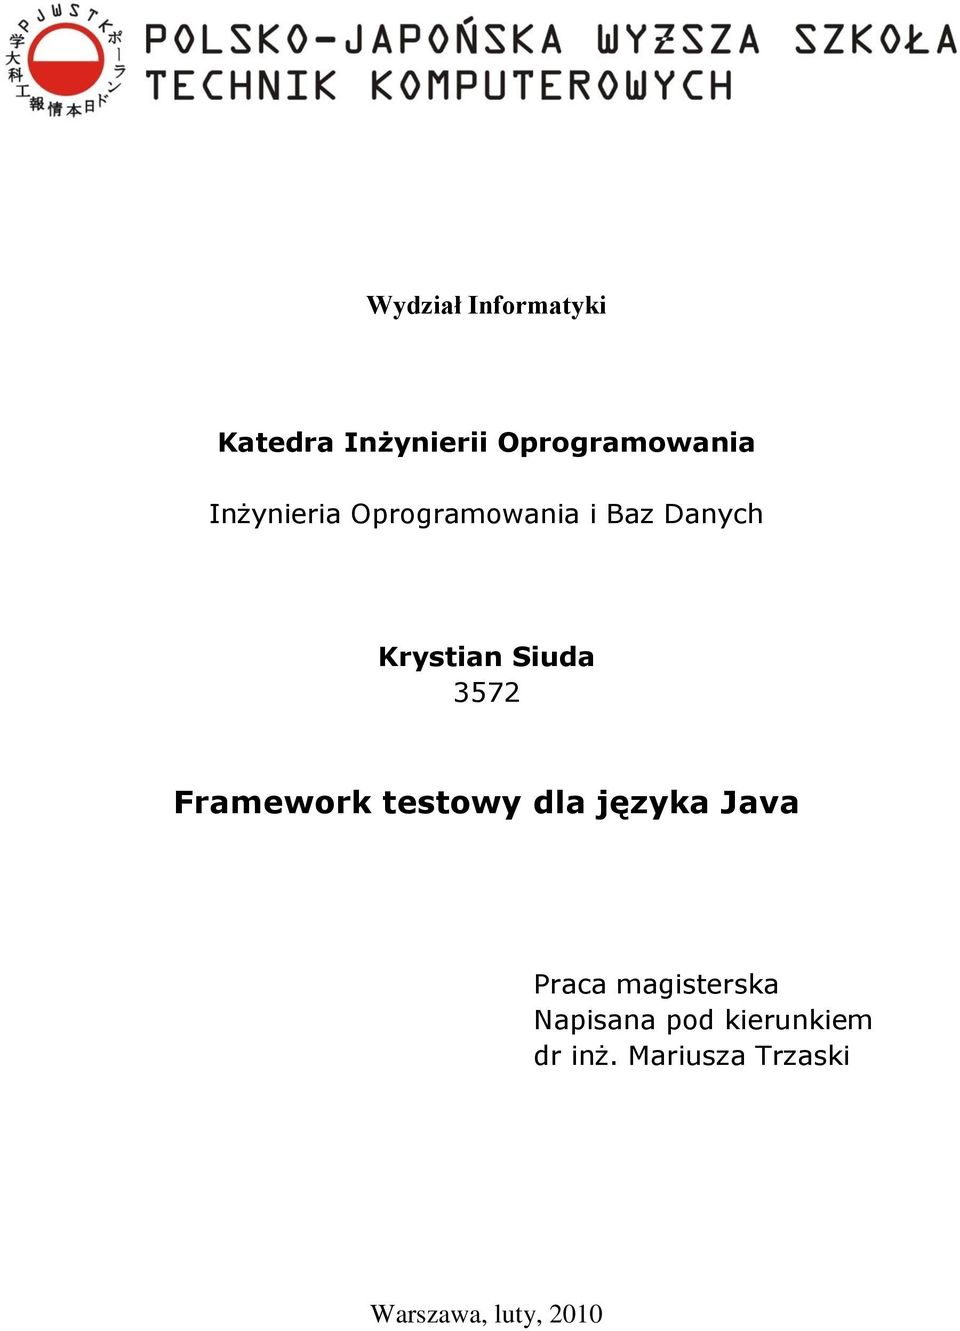 Framework testowy dla języka Java Praca magisterska